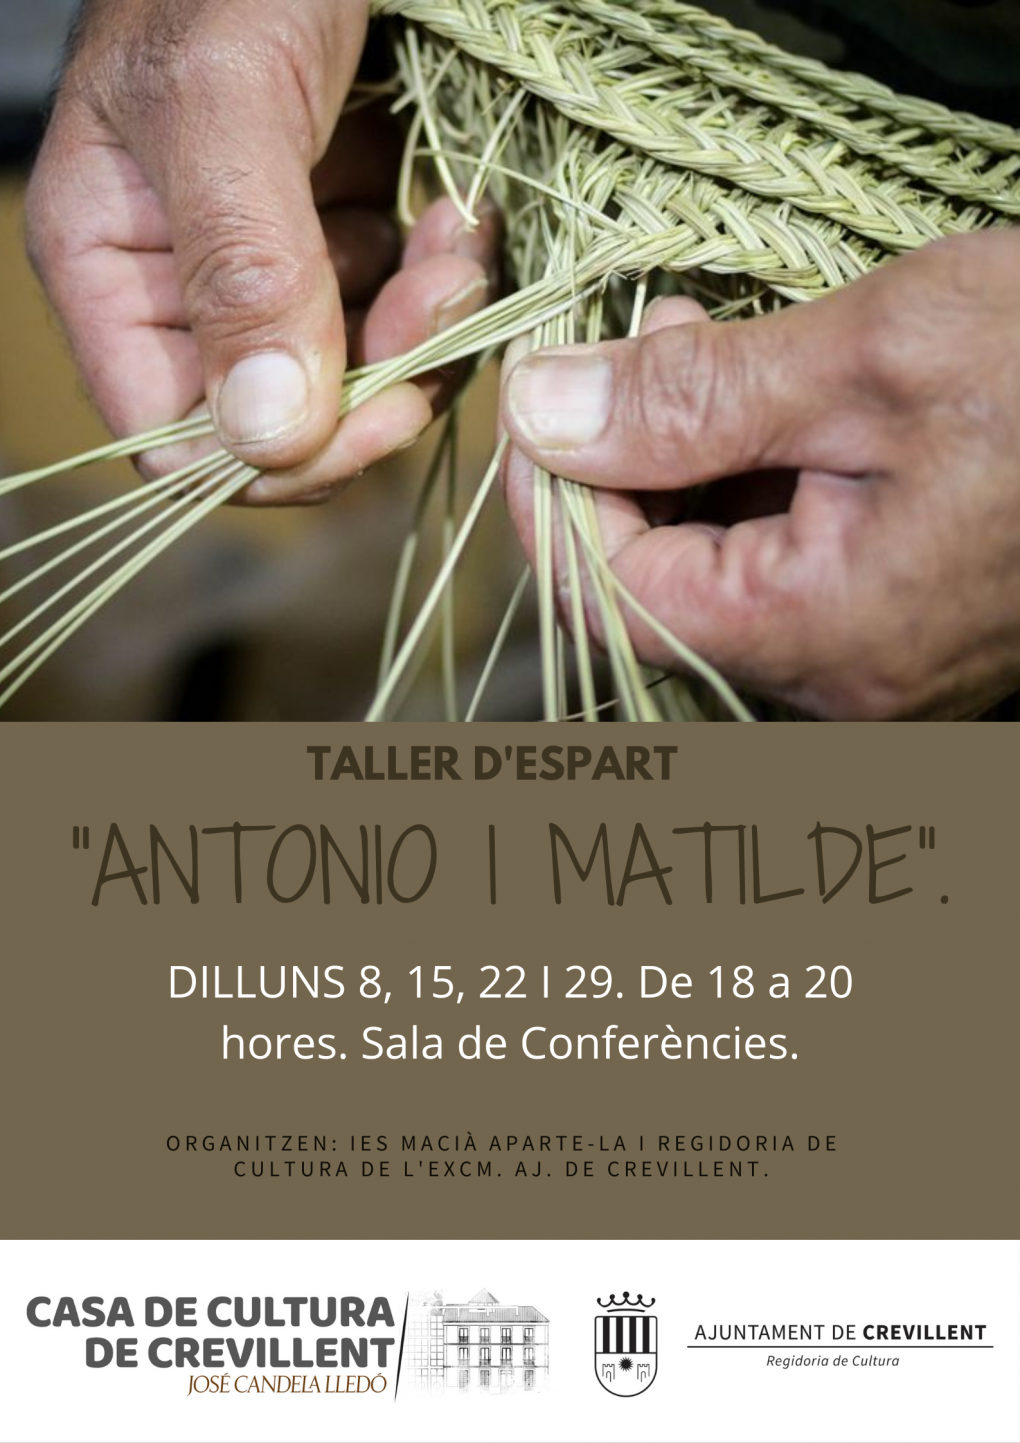 TALLER DE ESPARTO “ANTONIO Y MATILDE”.